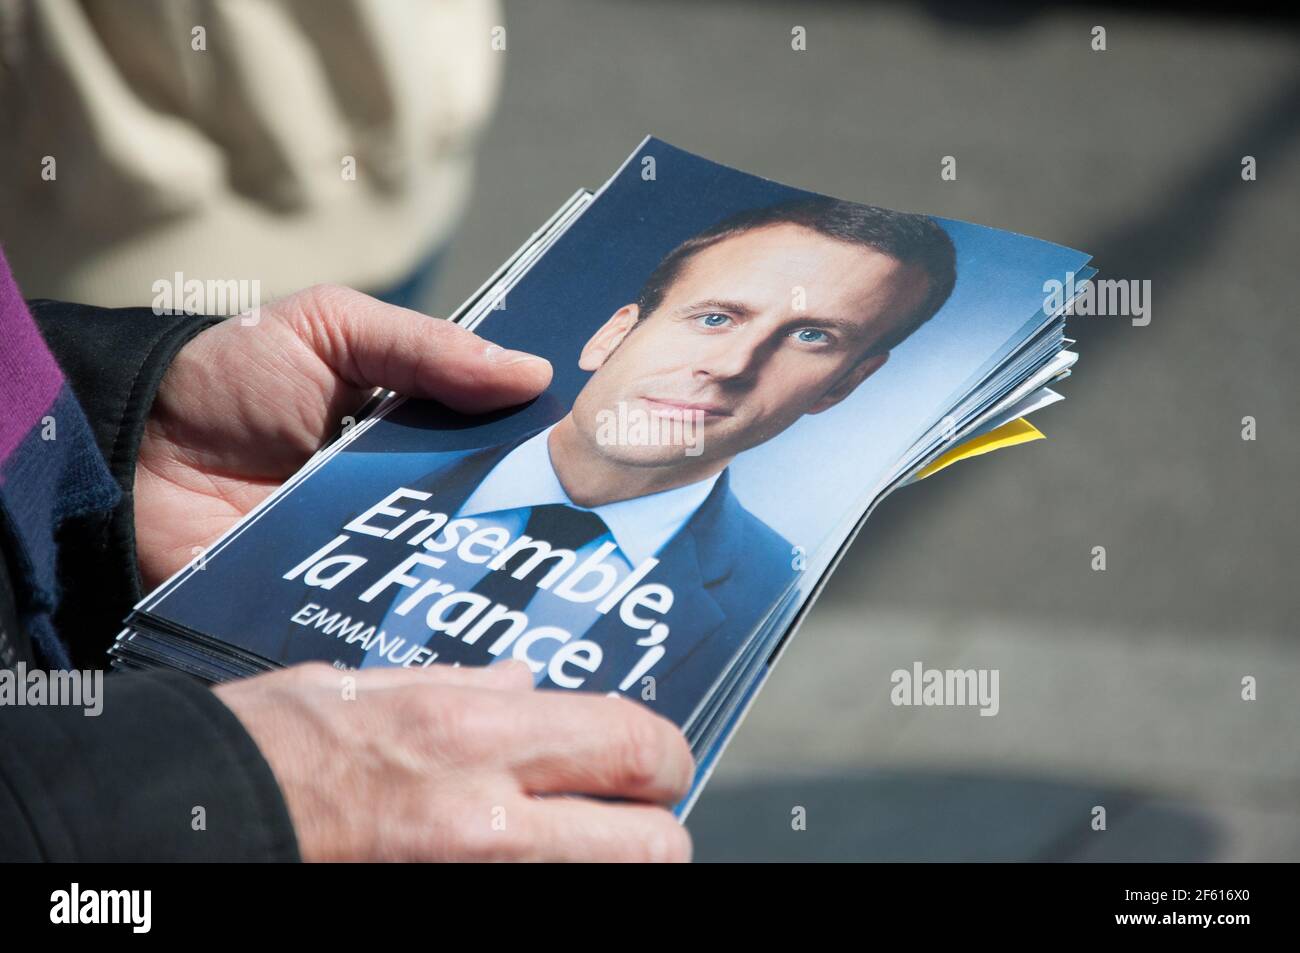 STRASSBURG, FRANKREICH - 29. APRIL 2017 : politische Aktivisten für 'en Marche !' Bewegung, die Wahlkampfflyer für die französischen Präsidentschaftswahlen verteilt Stockfoto